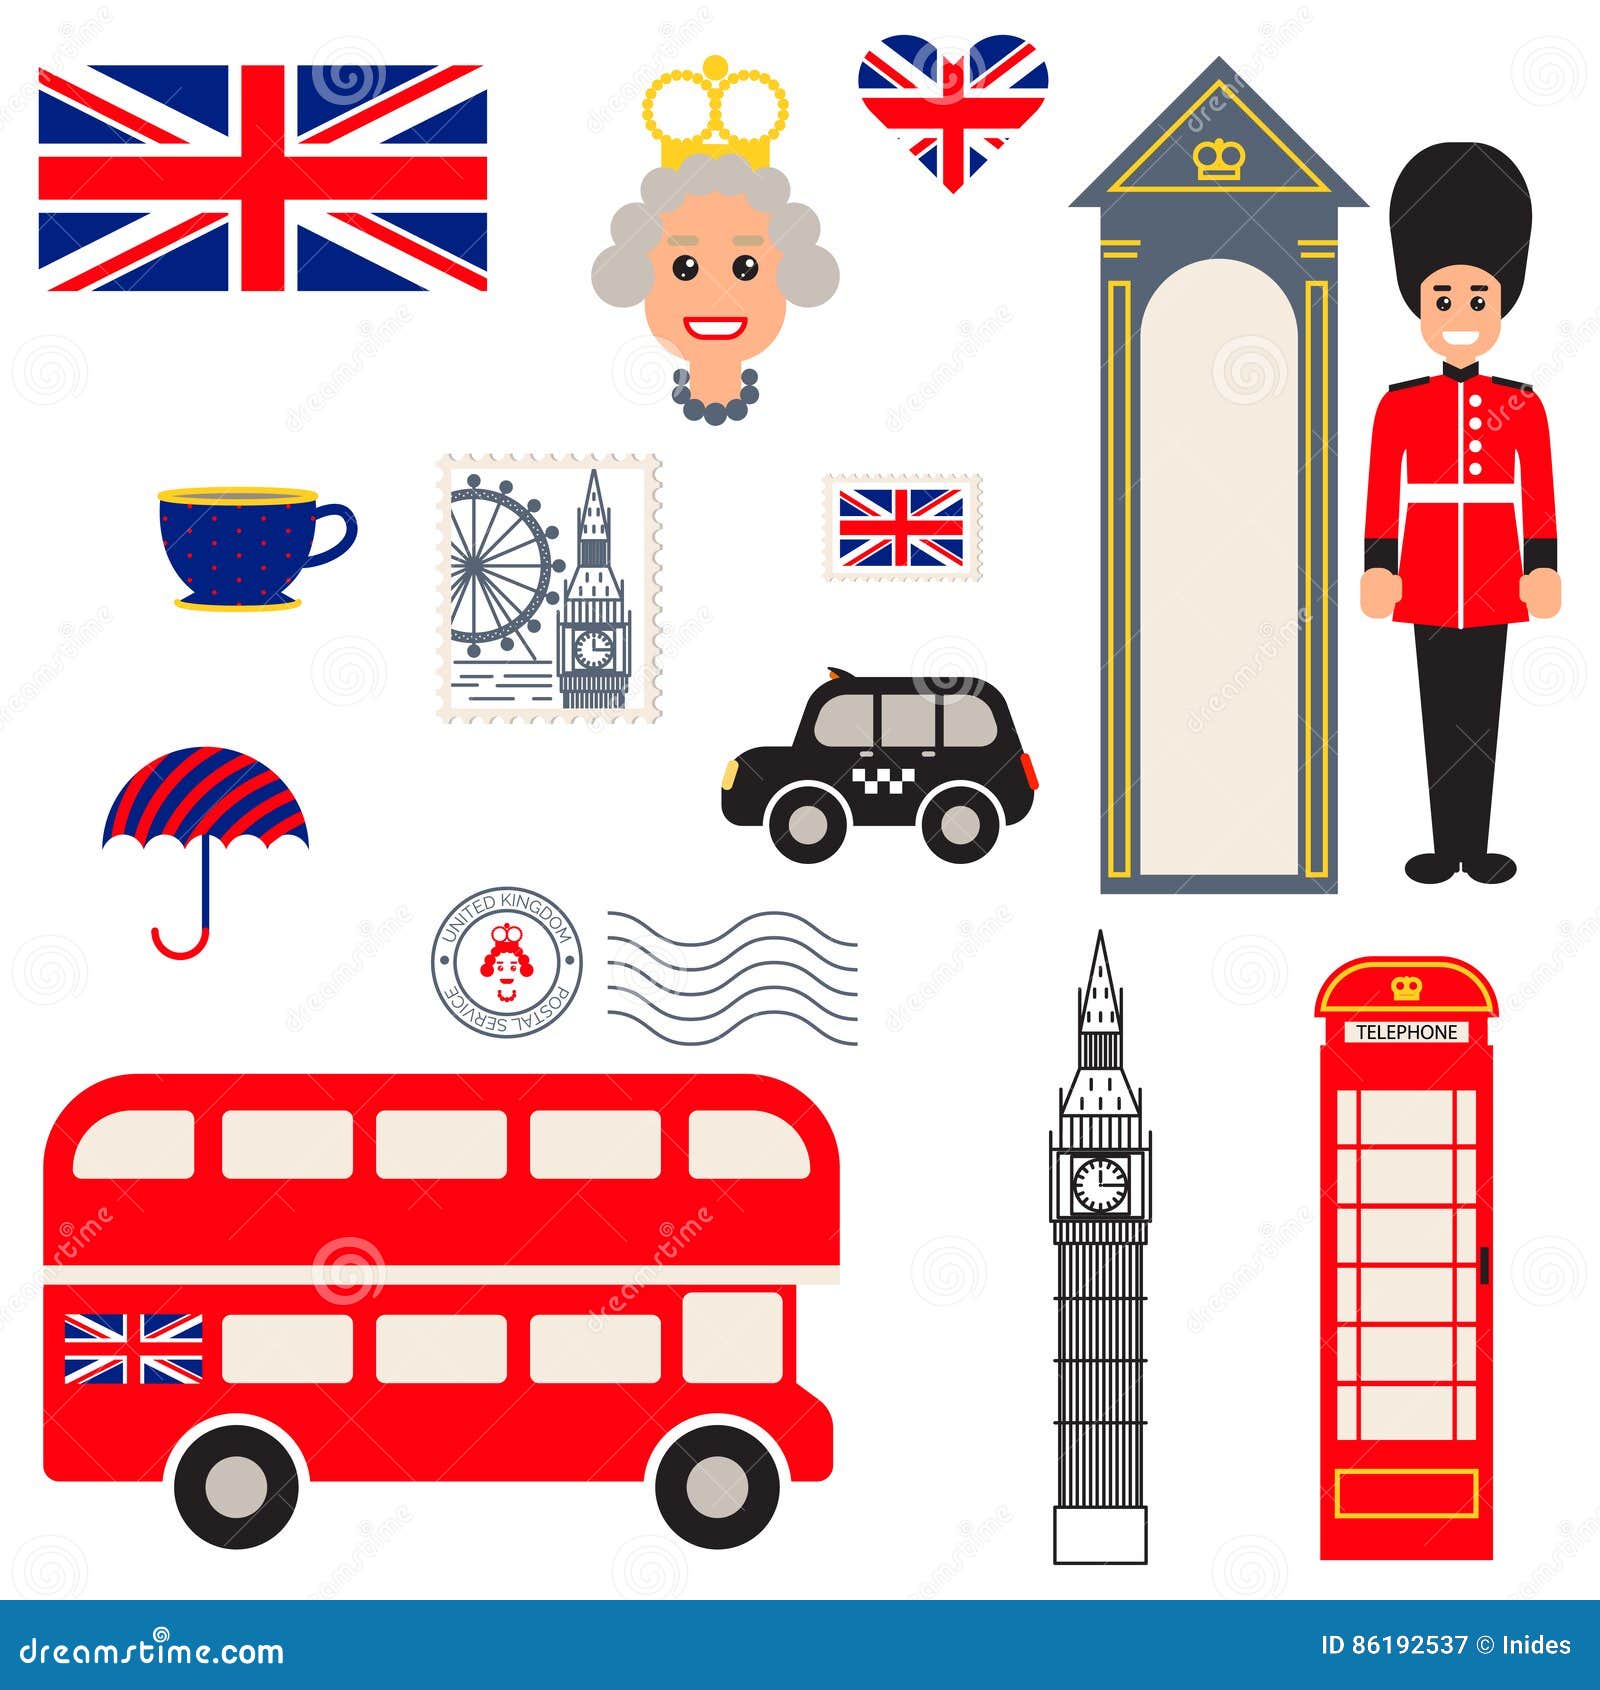 创意卡通英国国旗插画素材免费下载 - 觅知网